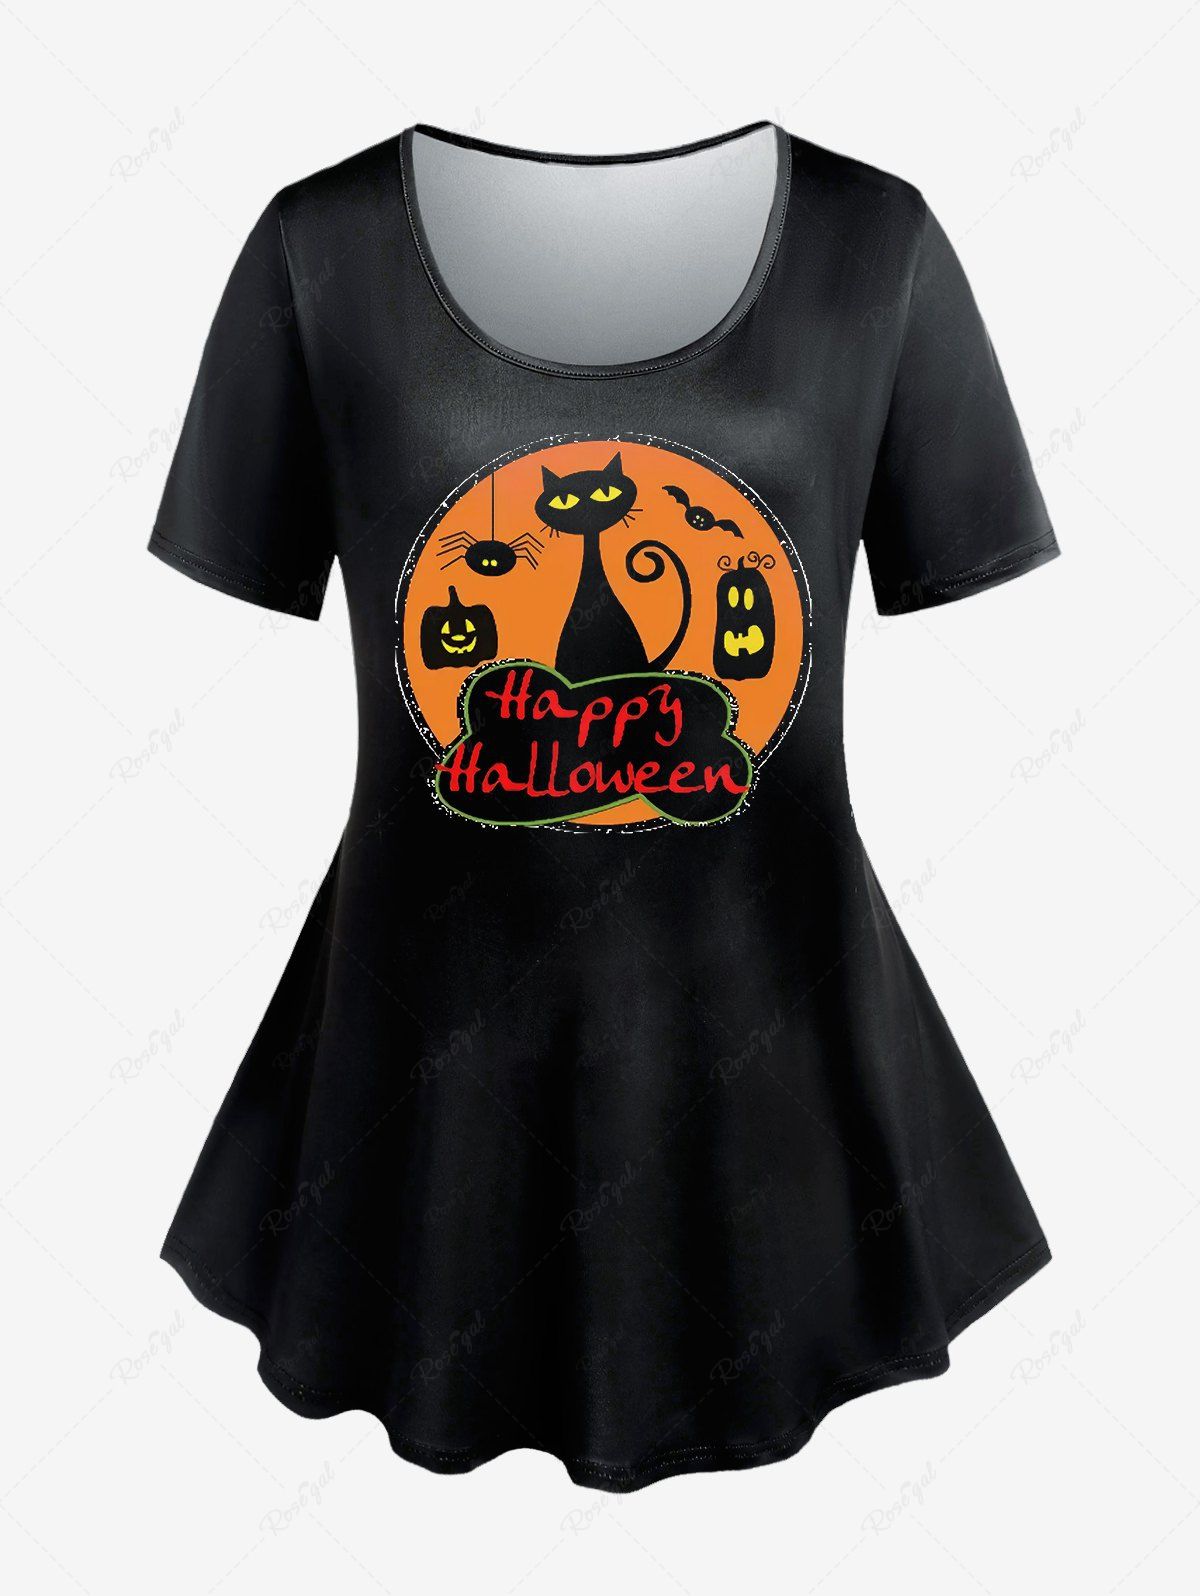 Sale Cat Pumpkin Print Halloween Graphic Tee  